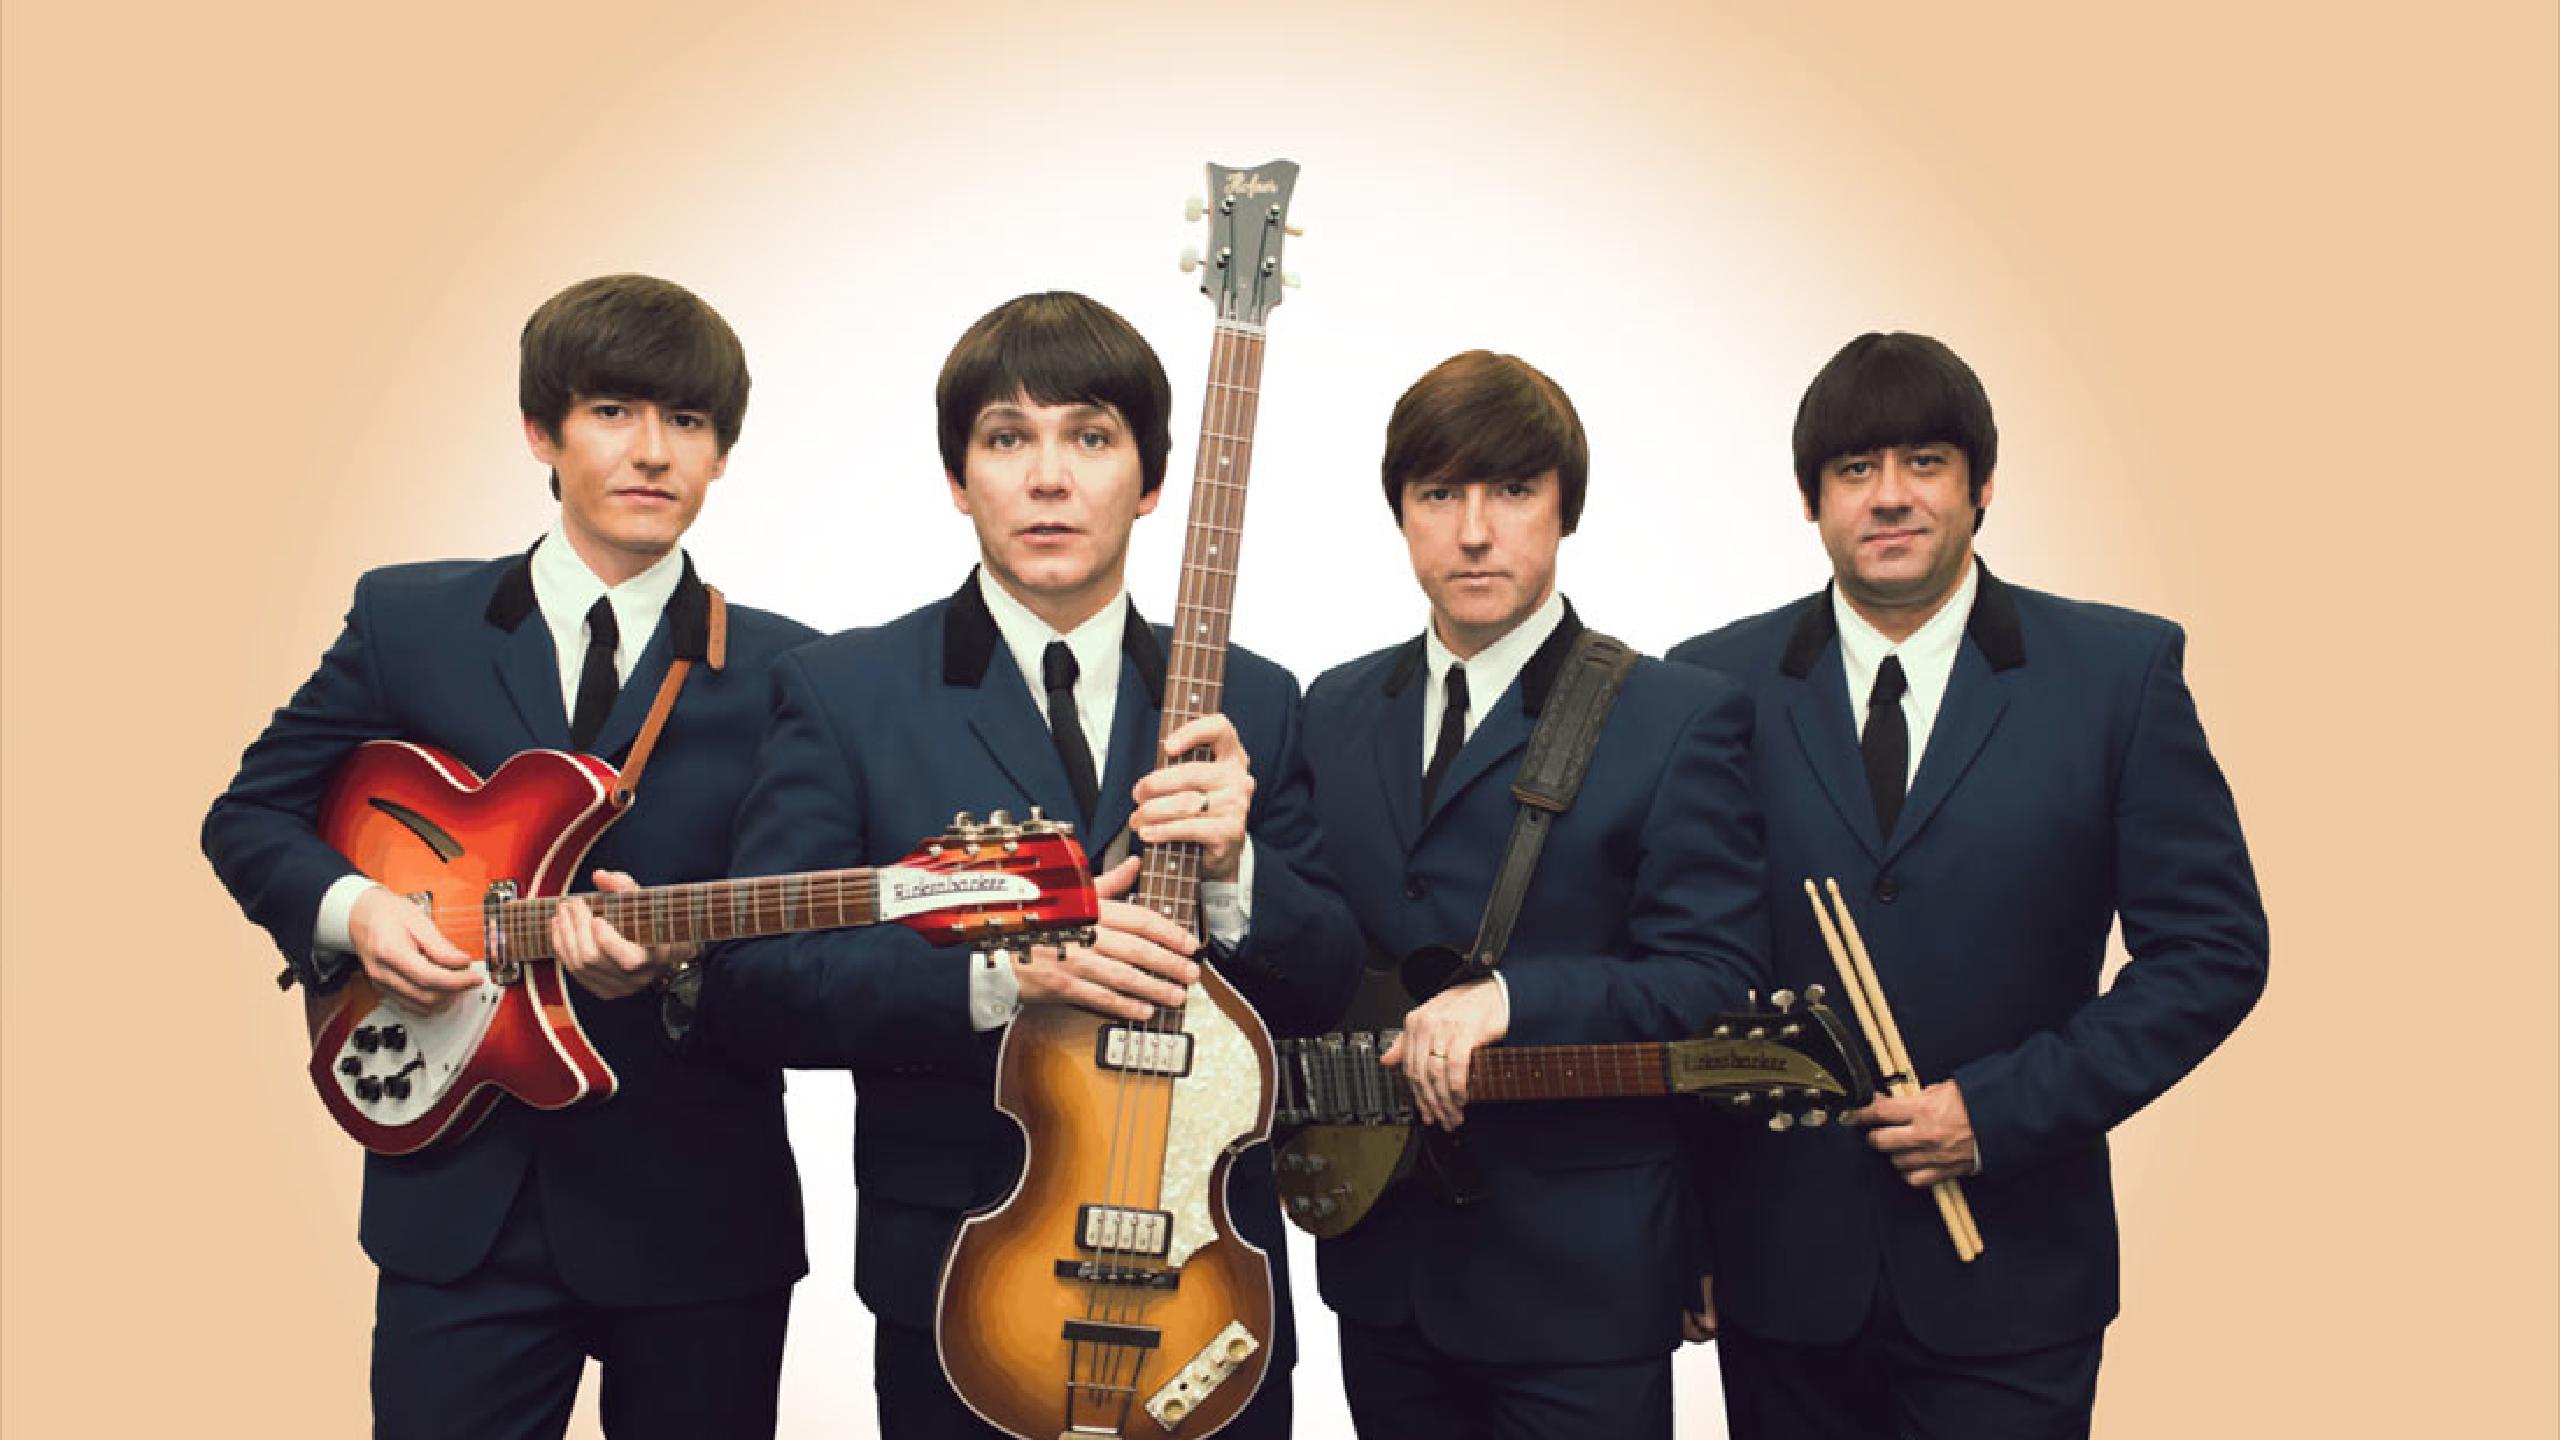 Fotografía promocional de Concierto de The Mersey Beatles en Dublin